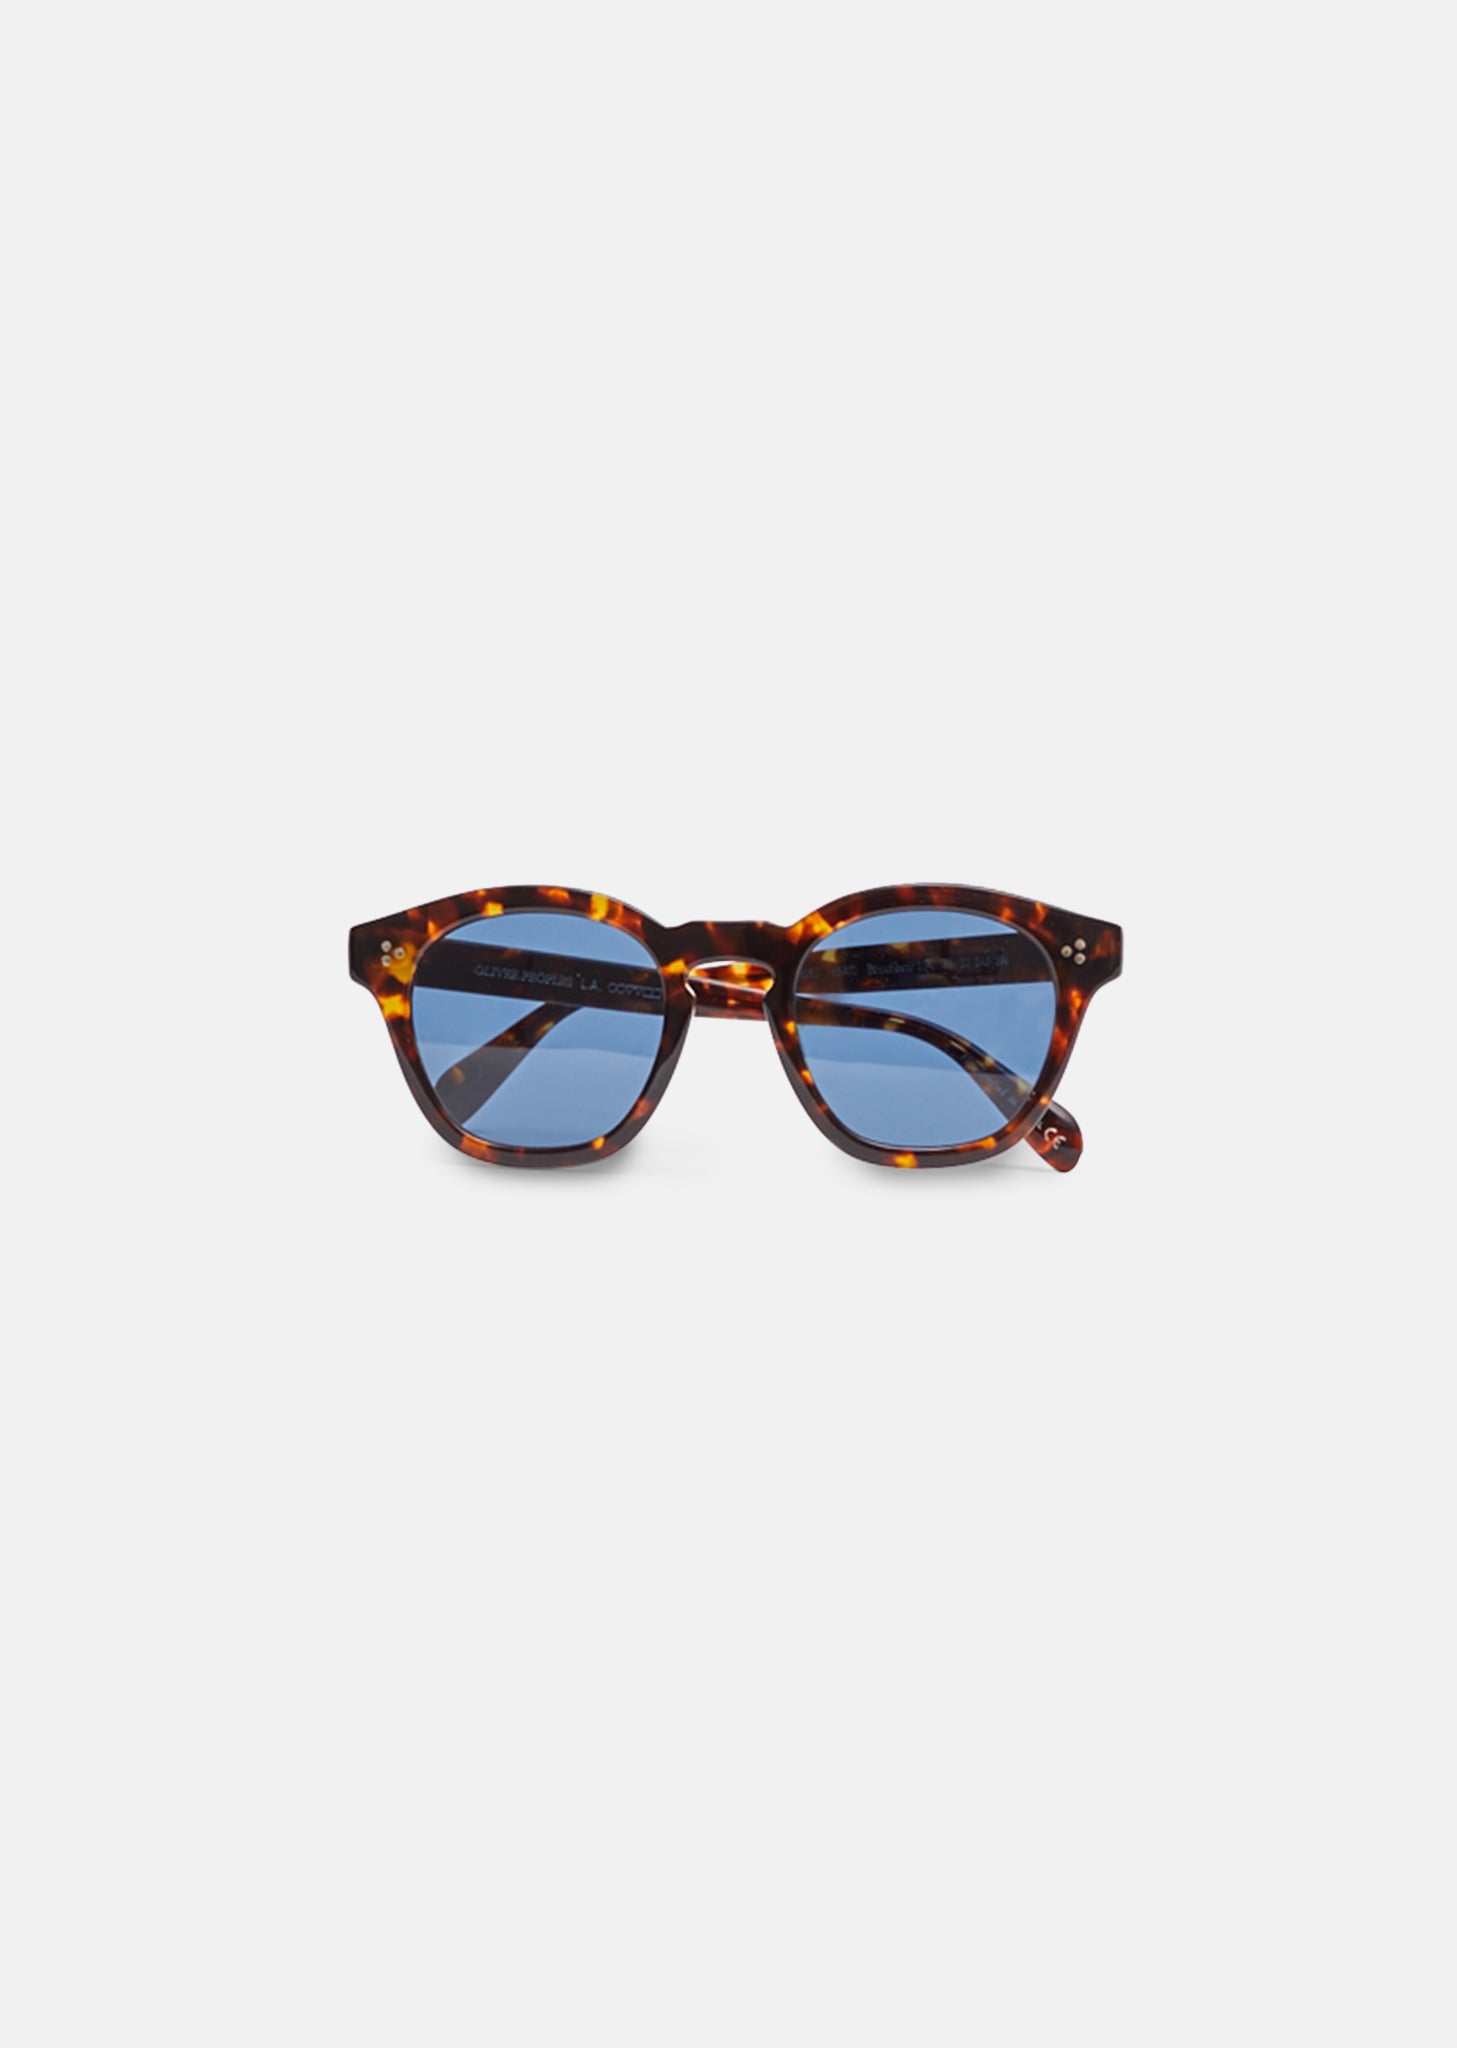 Boudreau L.A. Sunglasses by Oliver Peoples– La Garçonne